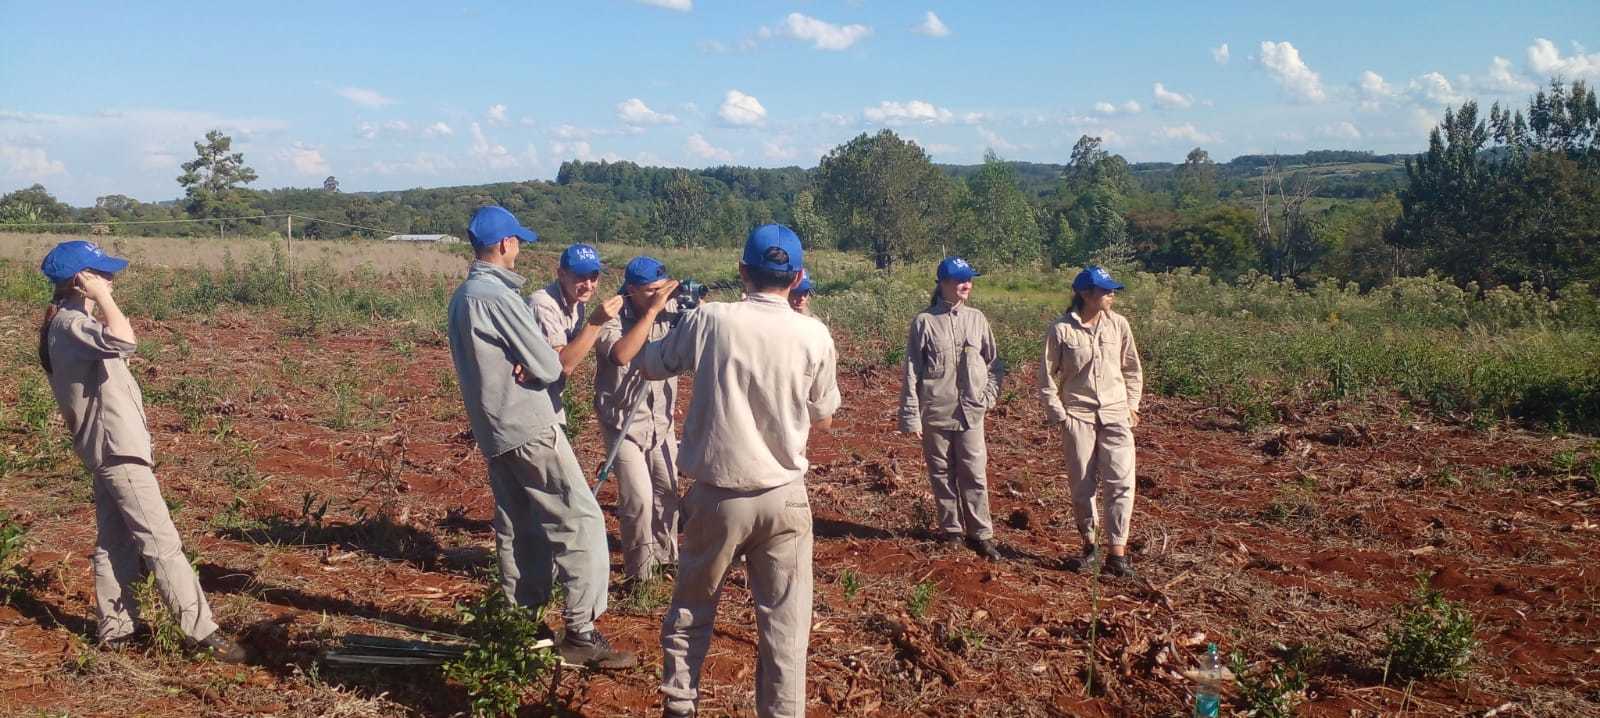 Brindan capacitación para evitar erosión y retener el agua a productores y alumnos de una IEA en una chacra misionera imagen-2